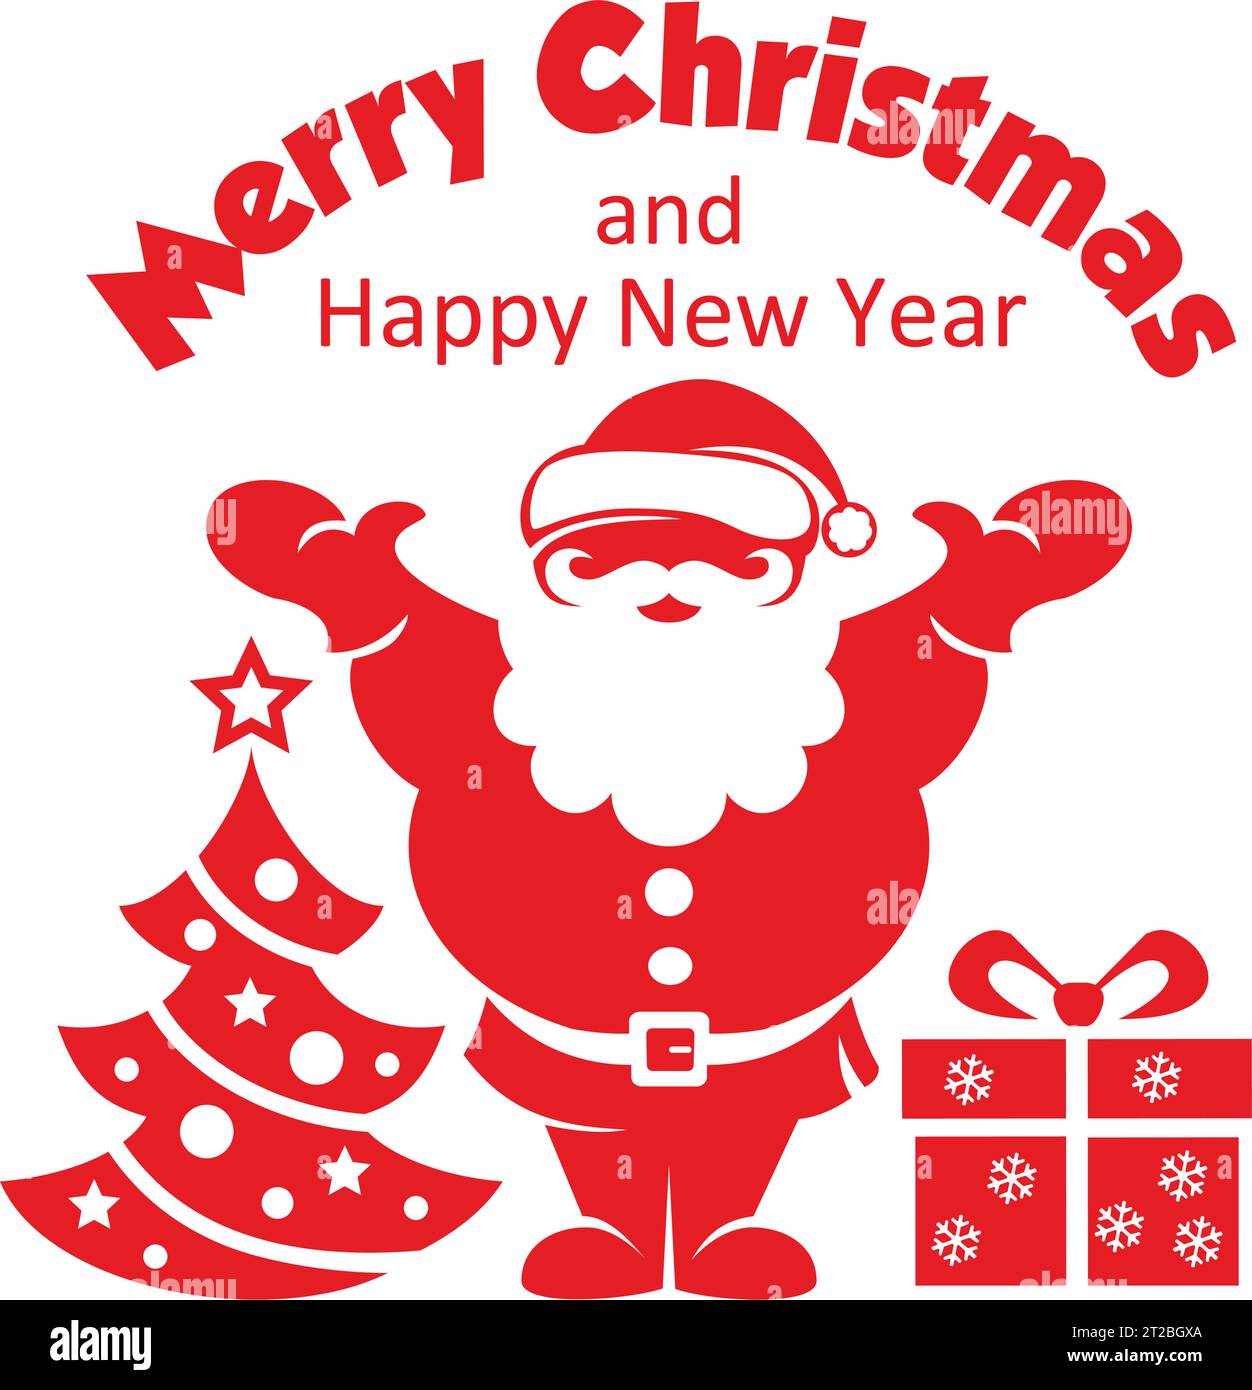 Frohe weihnachten und ein frohes neues Jahr! Grußkarte mit Weihnachtsmann, Neujahrsbaum und Geschenk. Vektor auf transparentem Hintergrund Stock Vektor